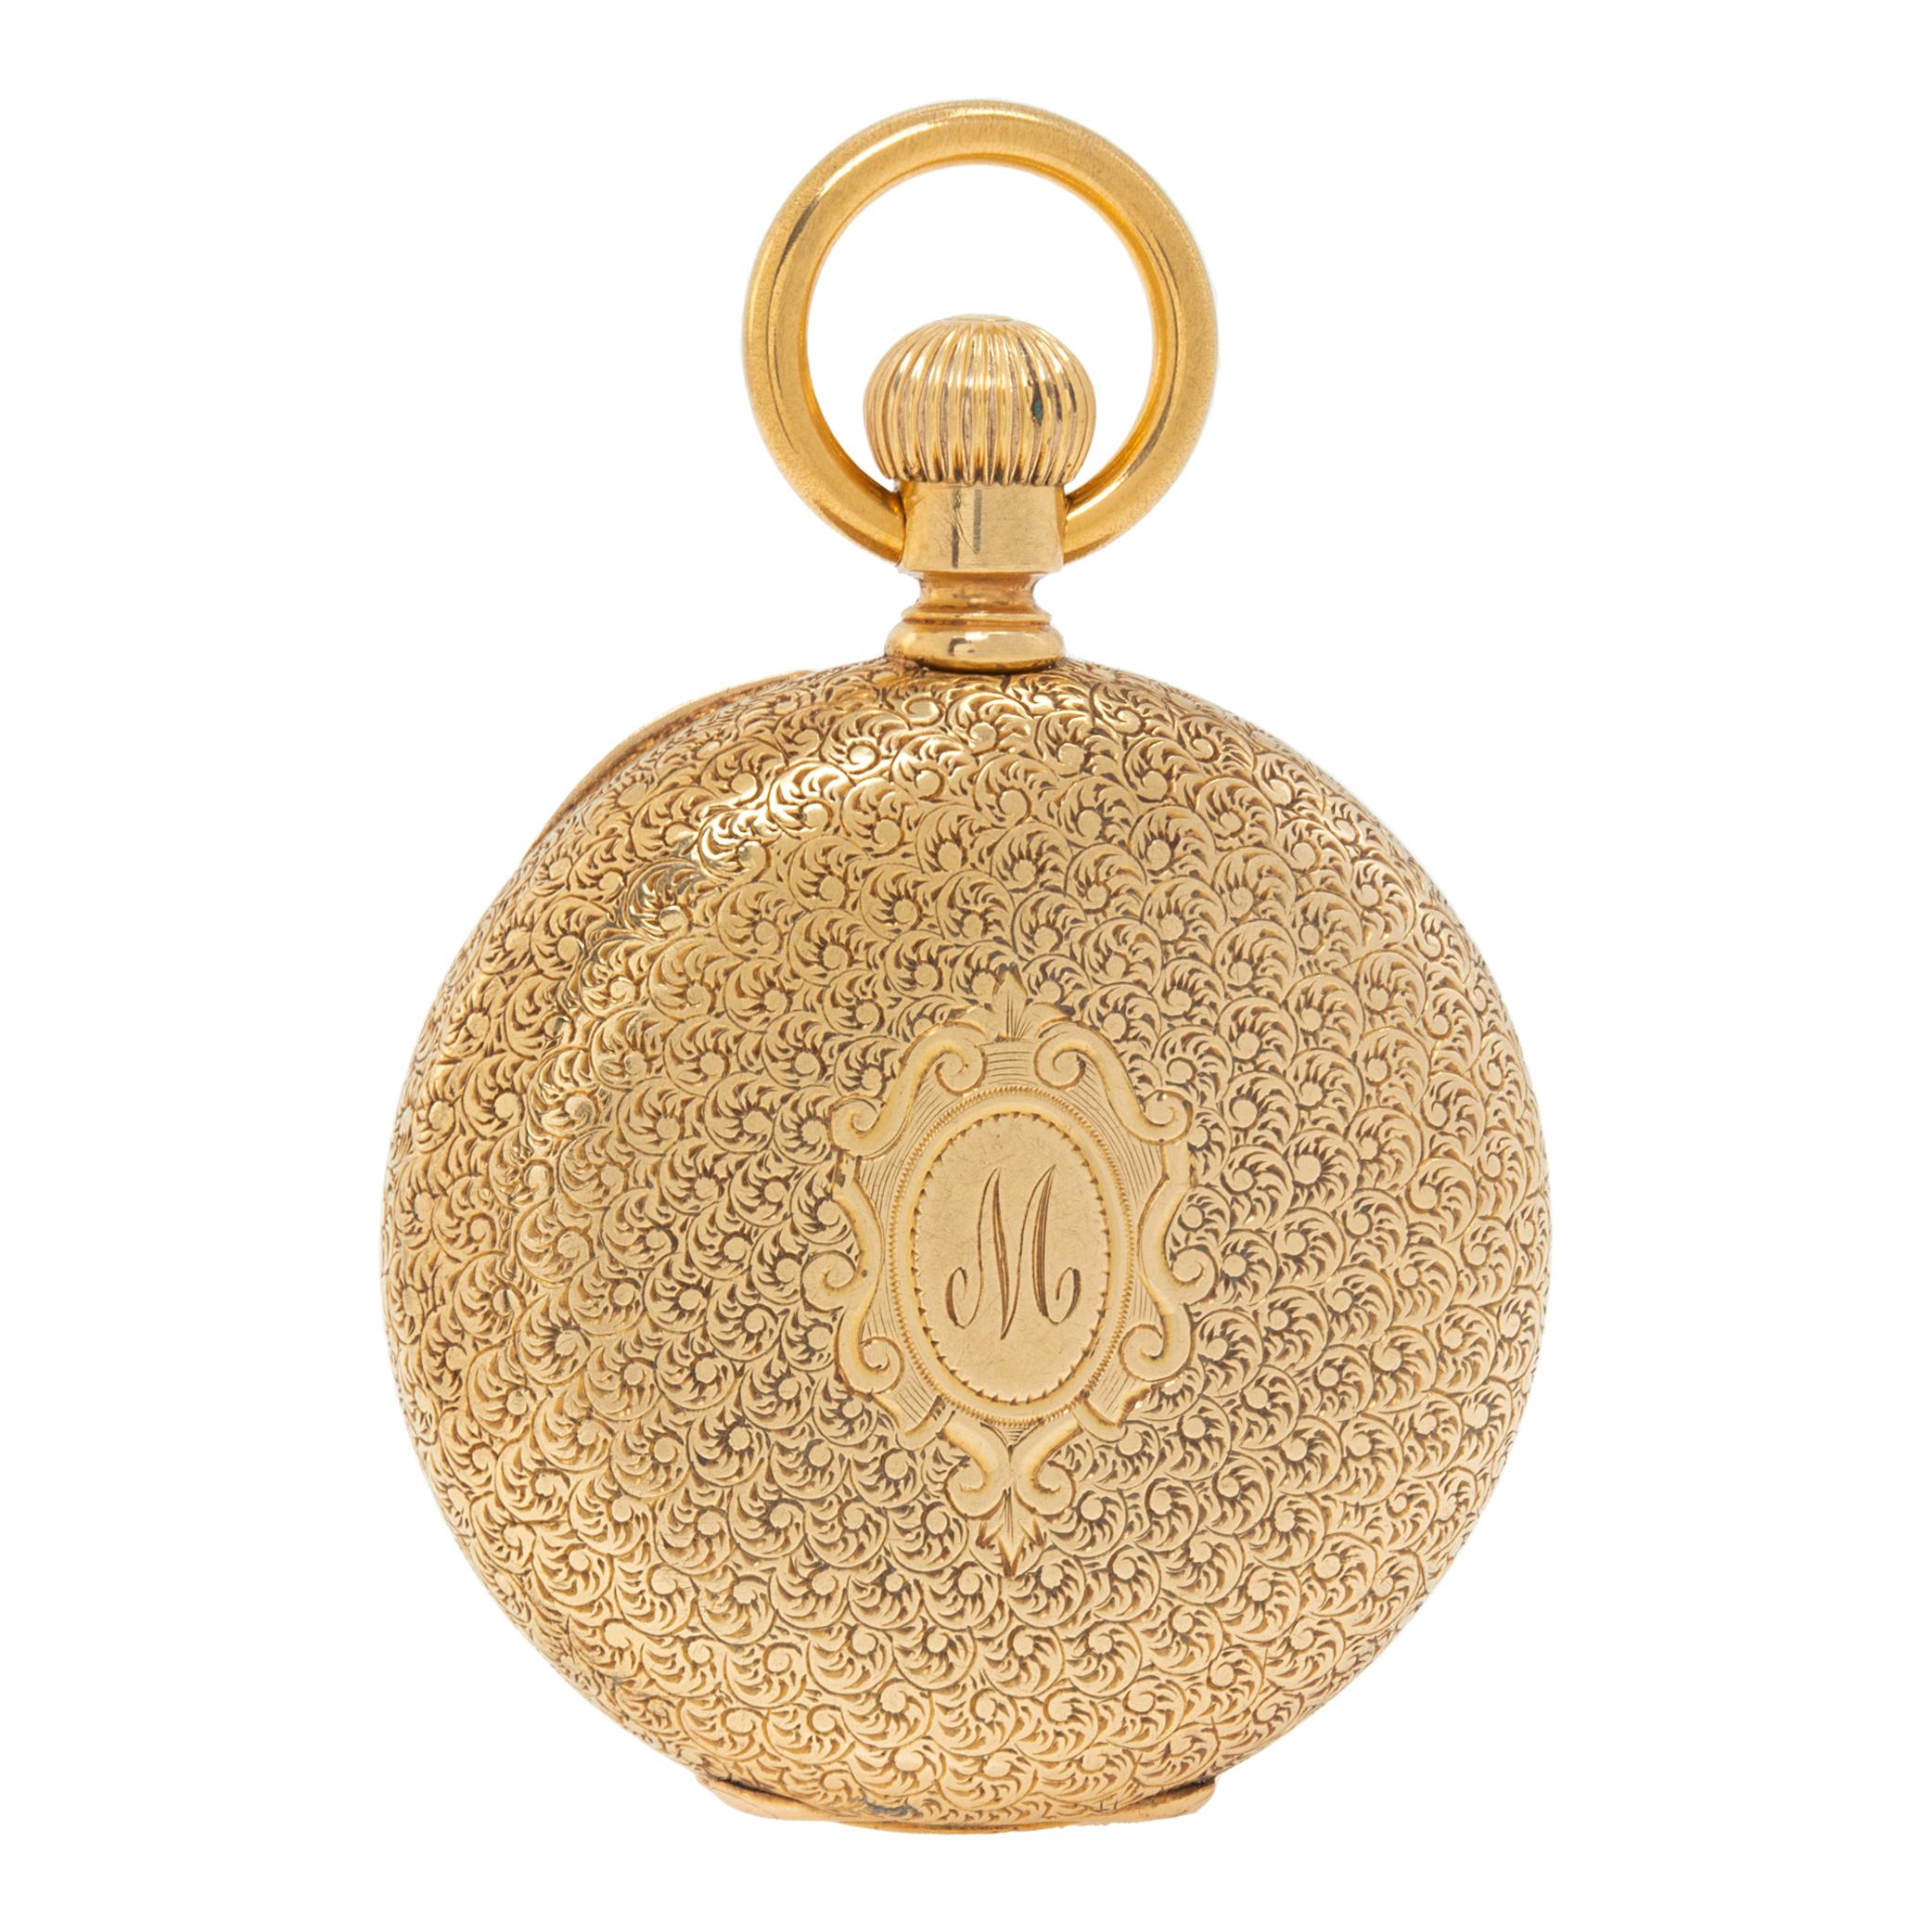 Handgefertigte Tiffany & Co.-Taschenuhr aus 18 Karat Gelbgold